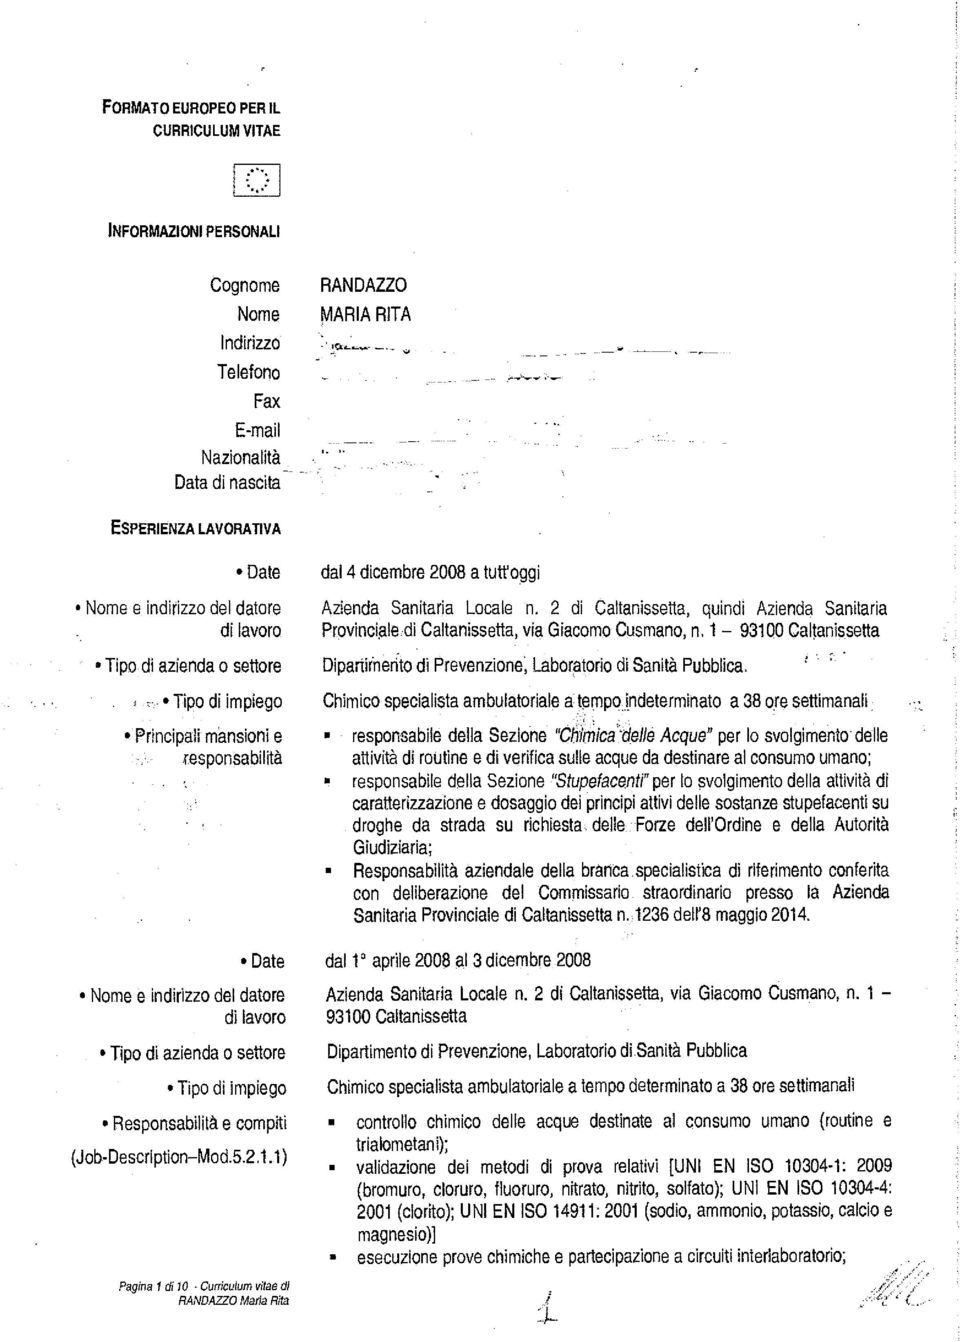 dal 4 dicembre 2008 a tuttoggi Azienda Sanitaria Locale n. 2 di Caltanissetta, quindi Azienda Sanitaria Provinciale di Caltanissetta, via Giacomo Cusmano, n.